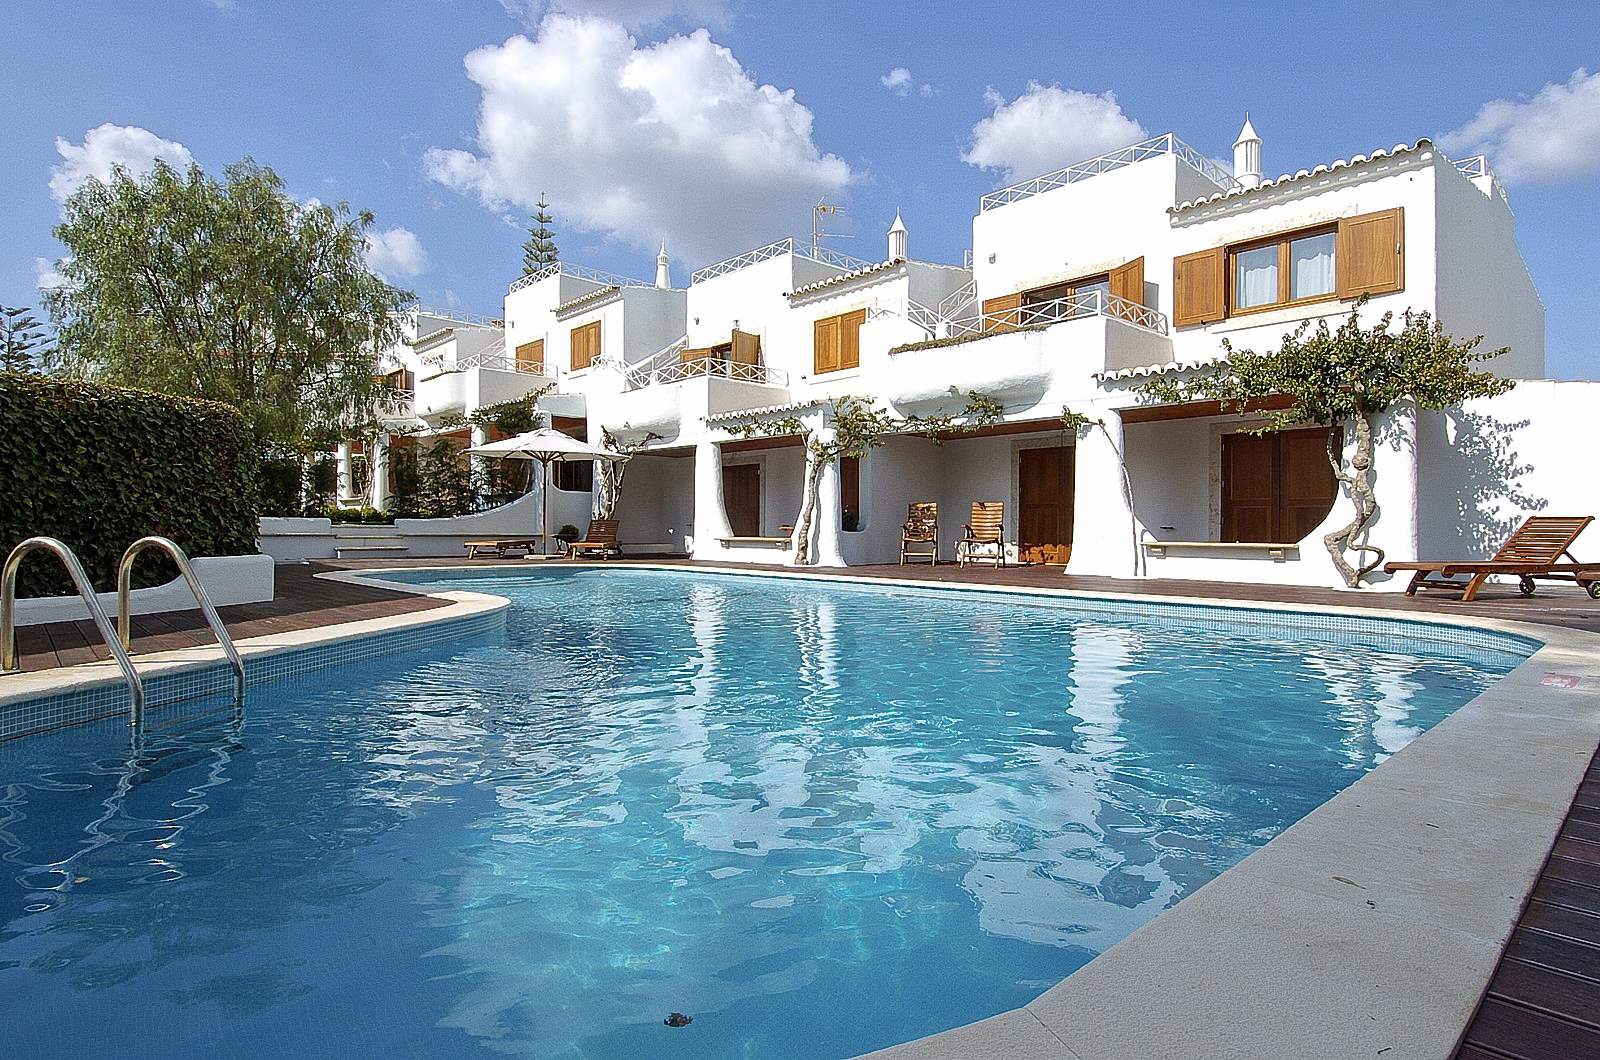 Apartments Quatro Irmaos (Four brothers), 2 bedroom apartment in Albufeira Area, Algarve